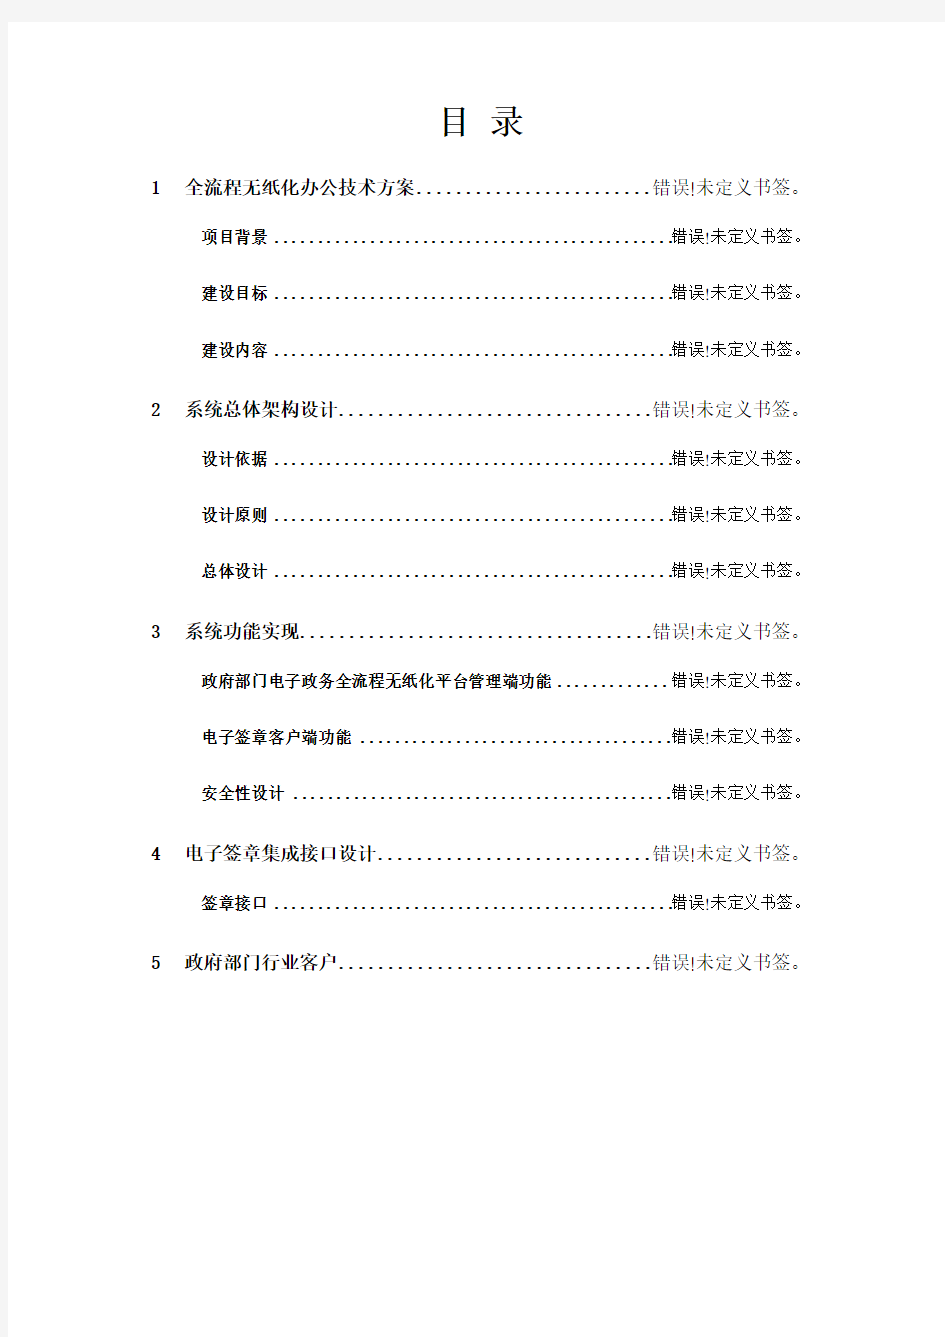 黑龙江省政府电子政务项目电子签章解决方案